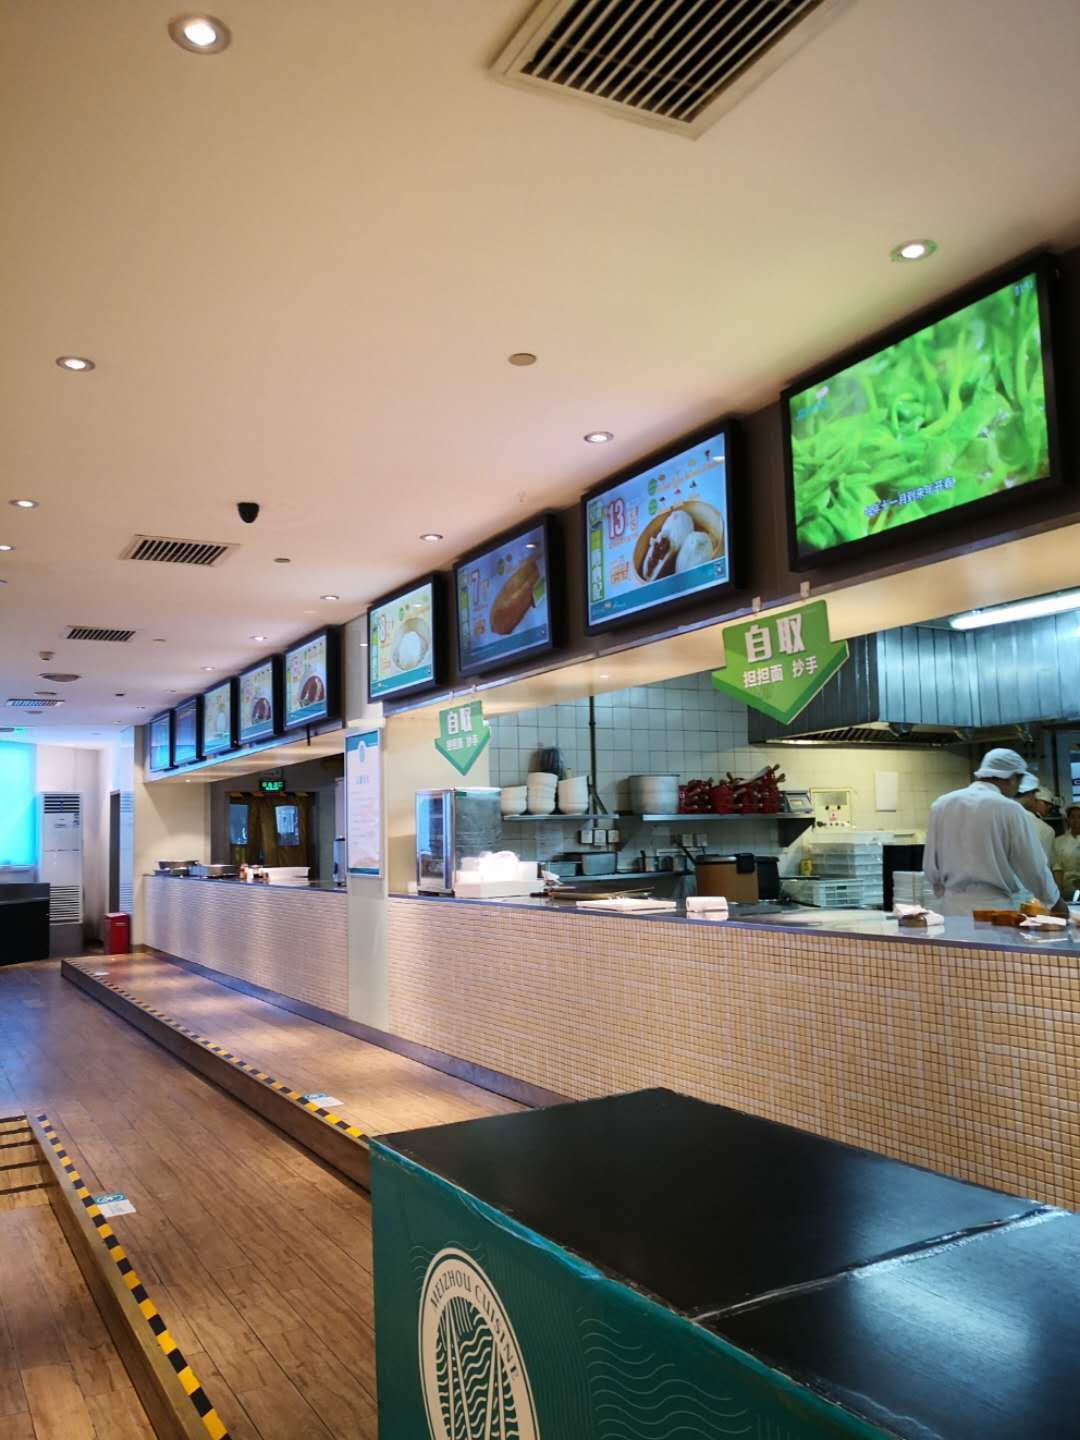 2022眉州东坡酒楼(东风路店)美食餐厅,｛评价｝菜品质量一般，不如...【去哪儿攻略】